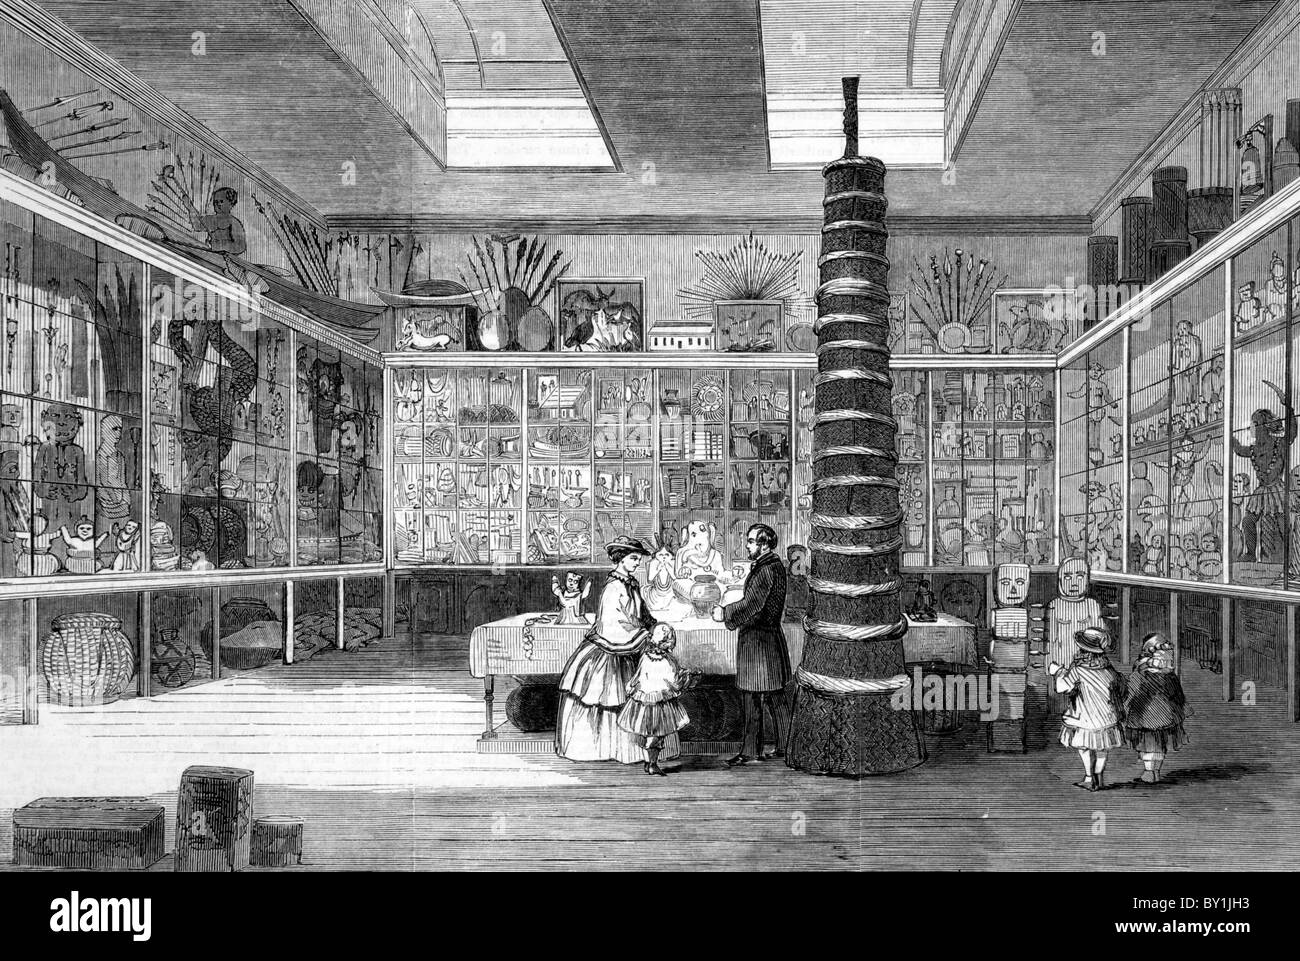 Le Musée de la Société Missionnaire de Londres : 19e siècle illustration noir et blanc ; de la London Illustrated News Banque D'Images